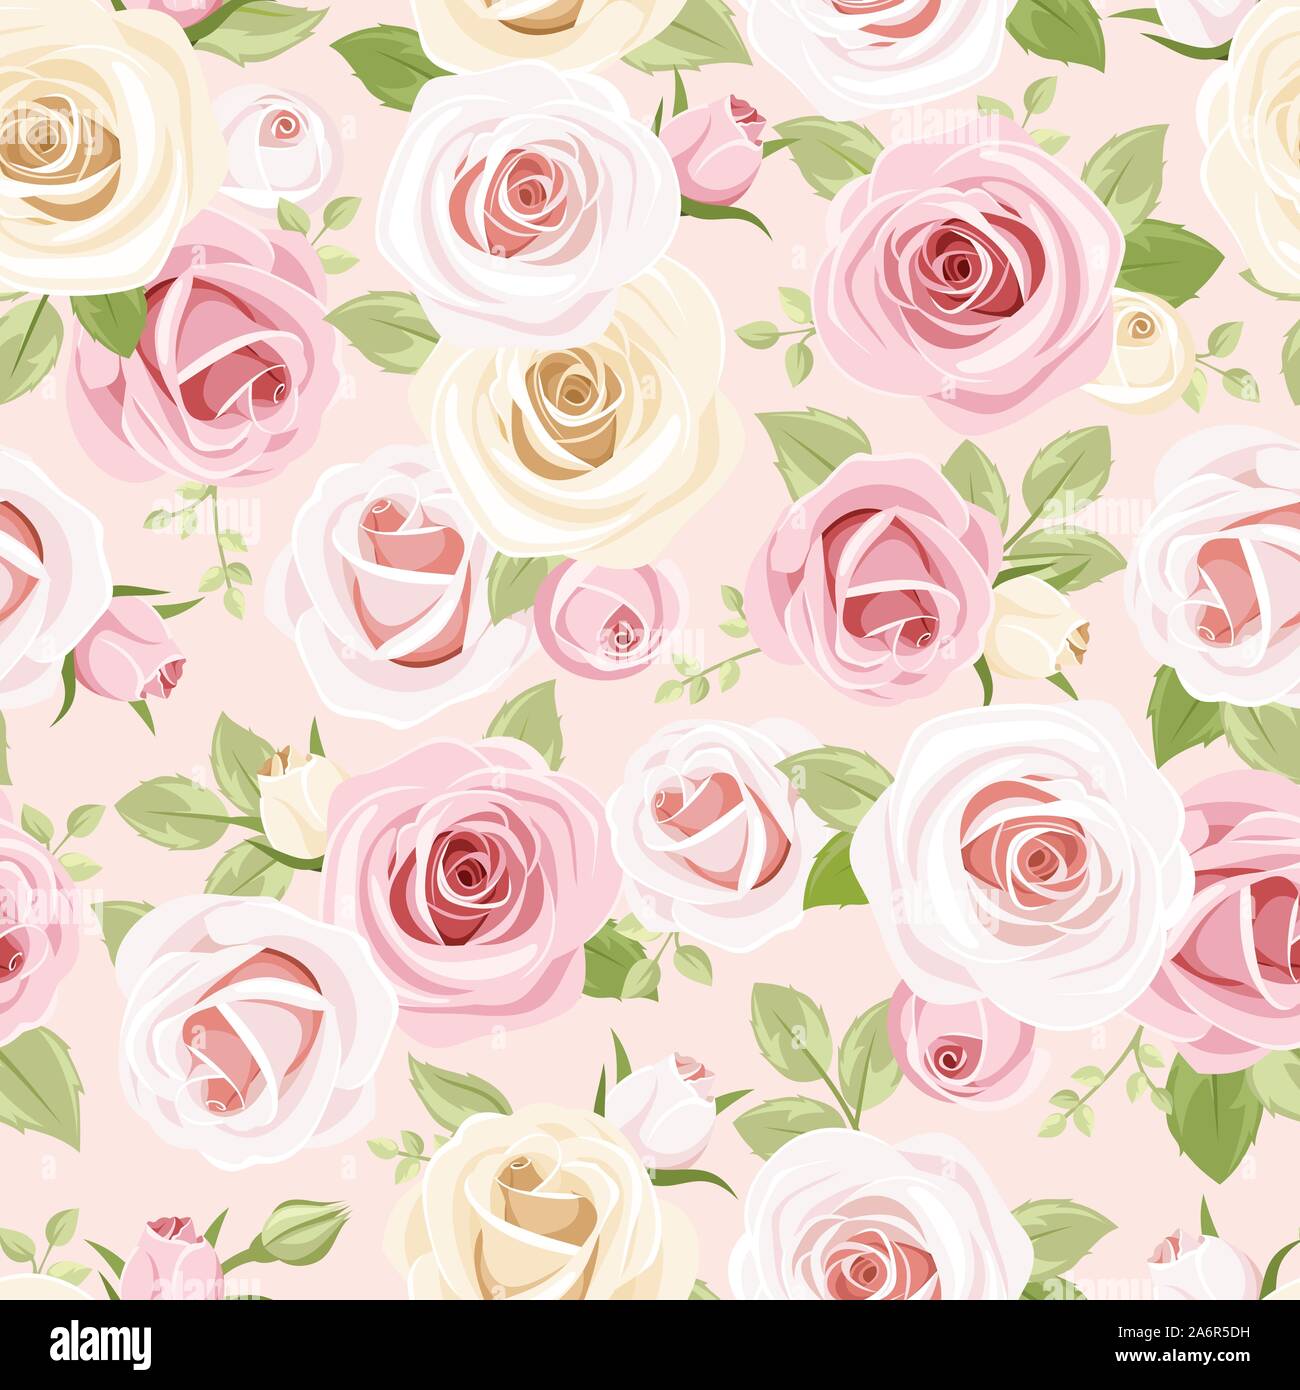 Vektor nahtlose Muster mit rosa und weißen Rosen und grüne Blätter auf einem rosa Hintergrund. Stock Vektor